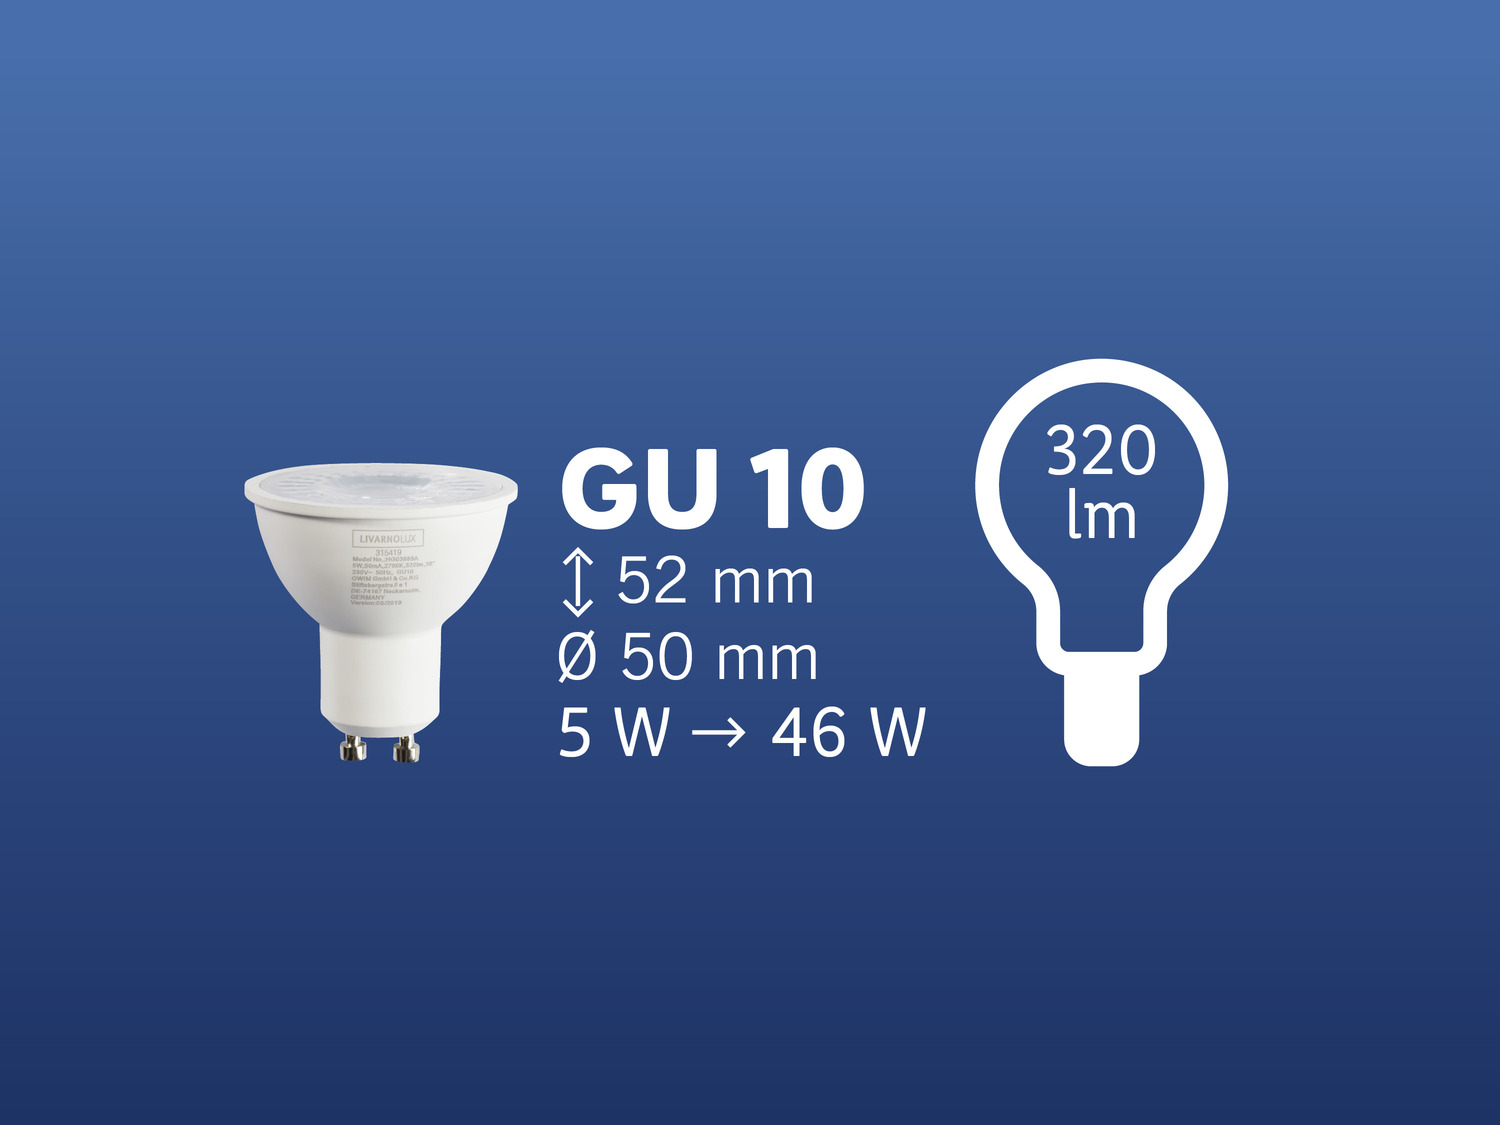 Żarówka LED Livarno Lux, cena 8,99 PLN 
- klasa energetyczna A+
- ilość cykli ...